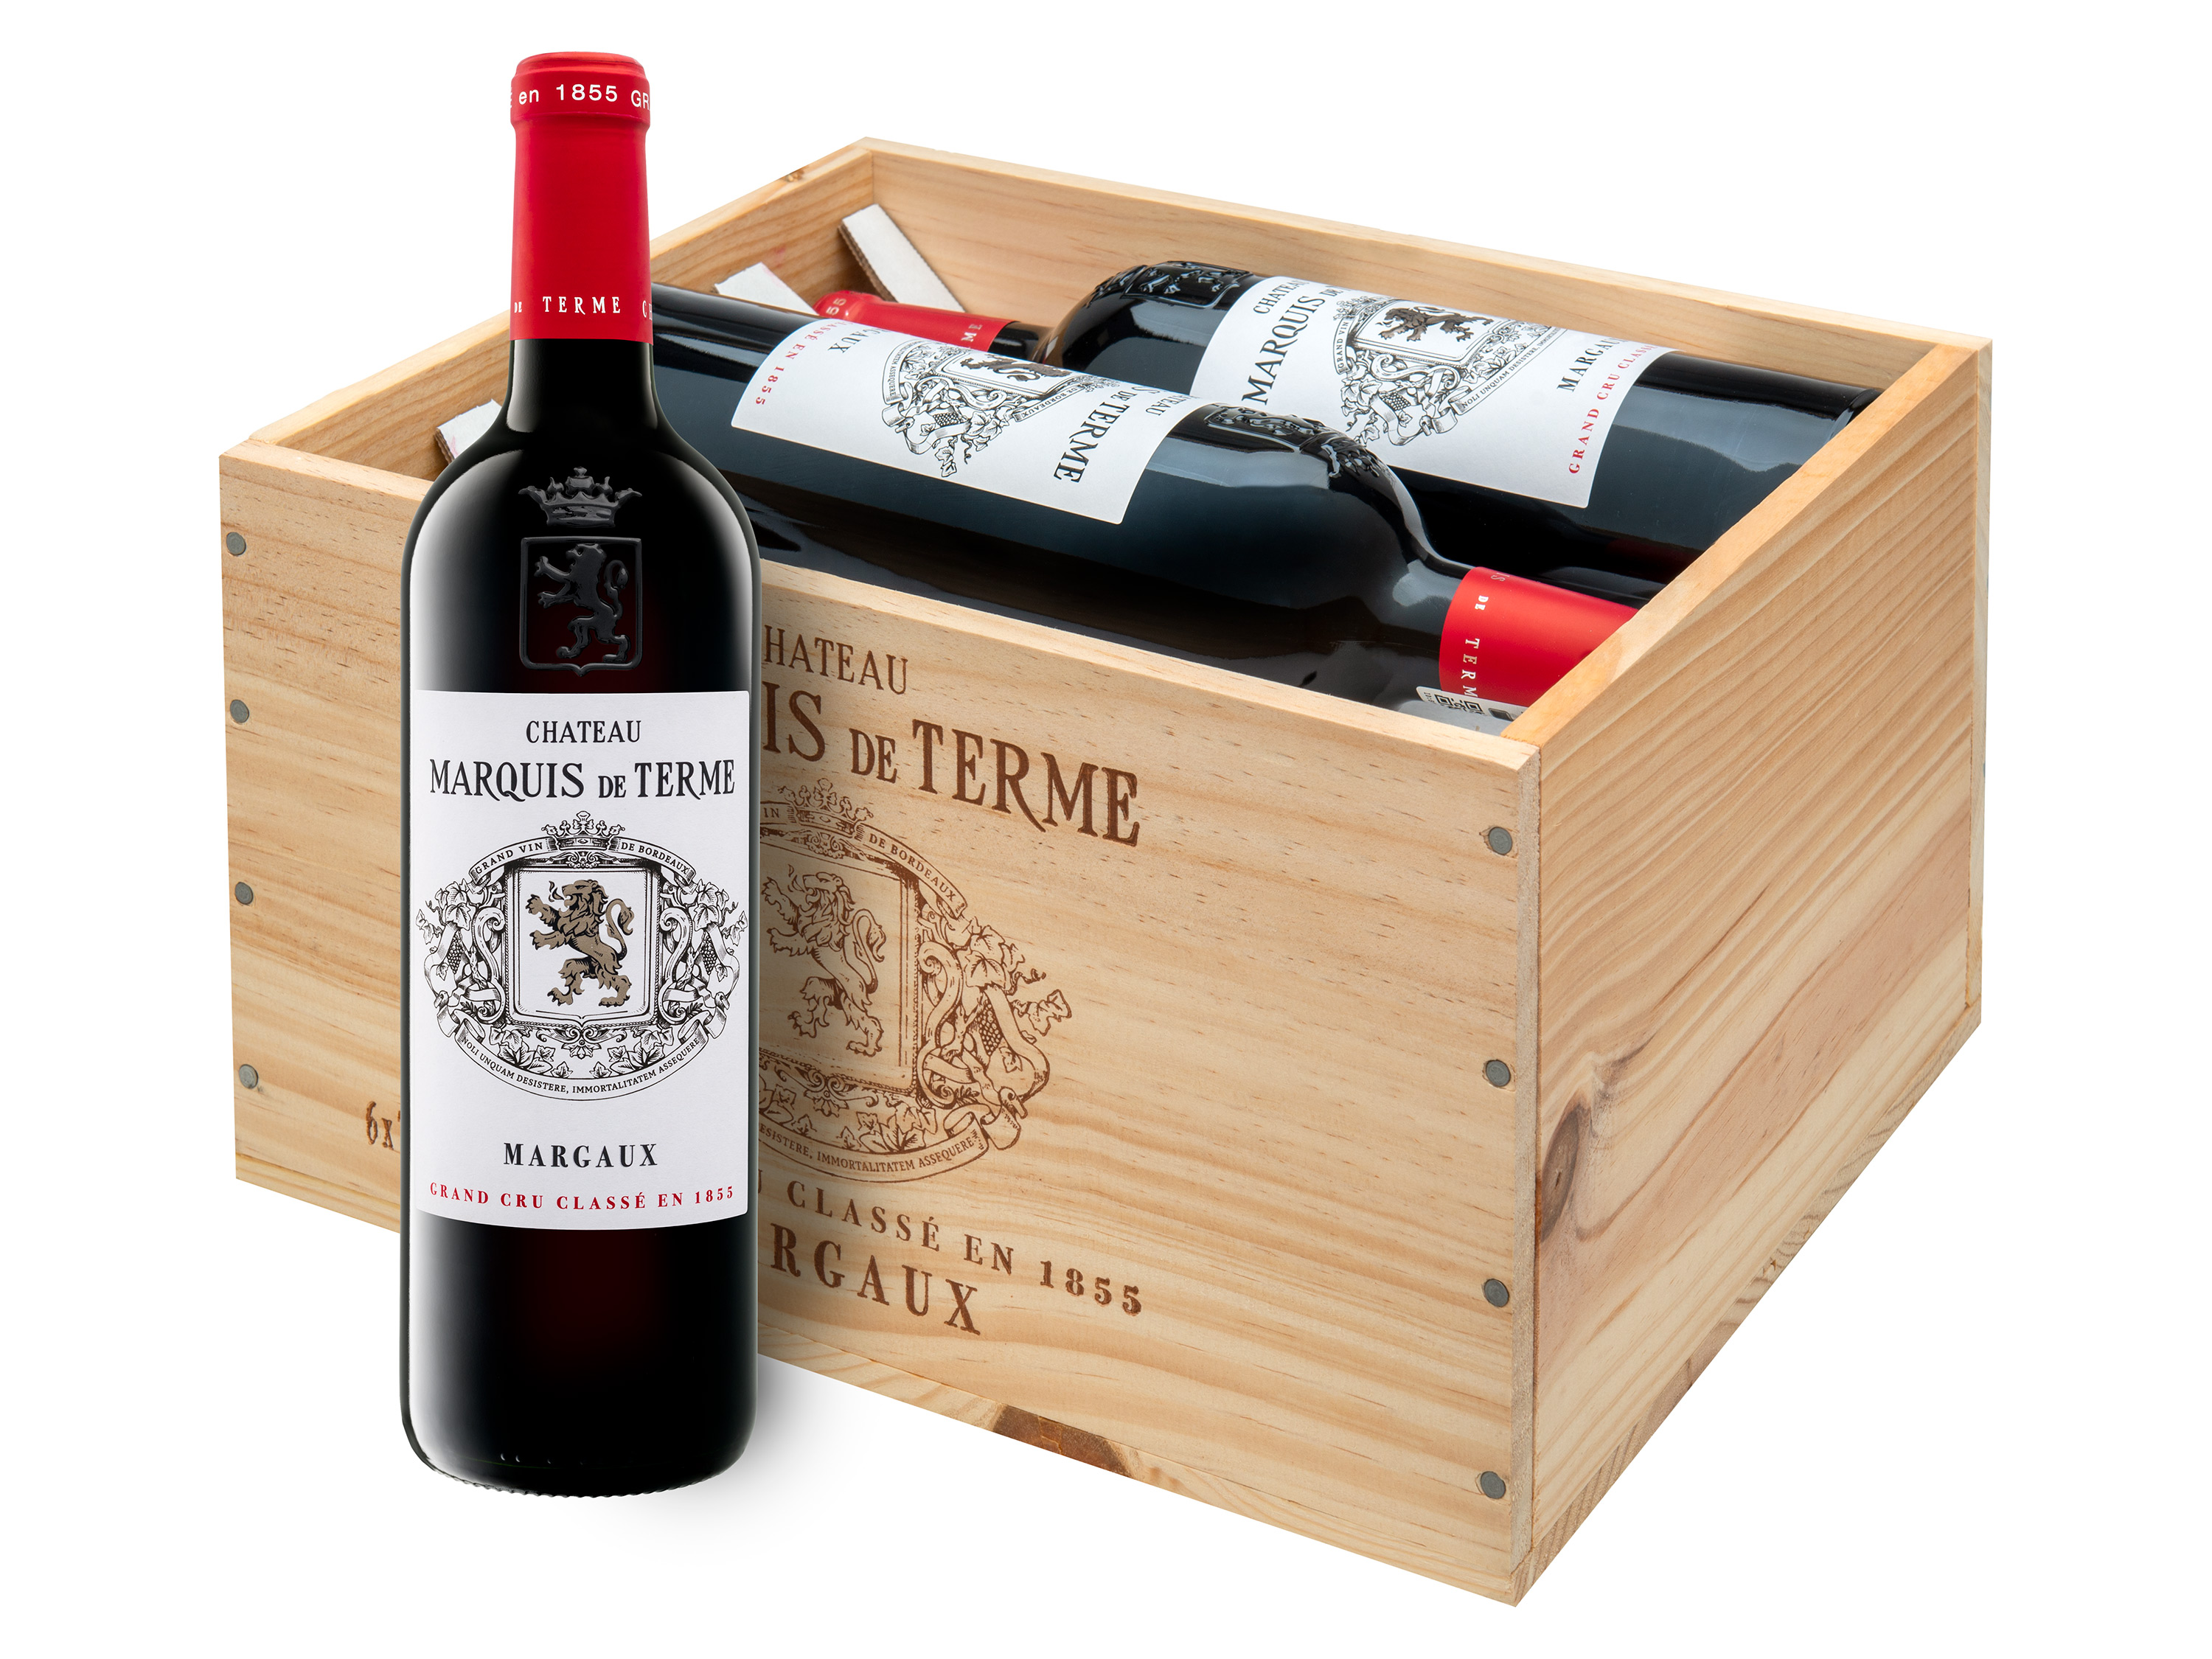 6 x 0,75-l-Flasche Château Marquis de Terme Margaux 4éme Grand Cru Classé AOC trocken, Rotwein 2018  - Original-Holzkiste Wein & Spirituosen Lidl DE